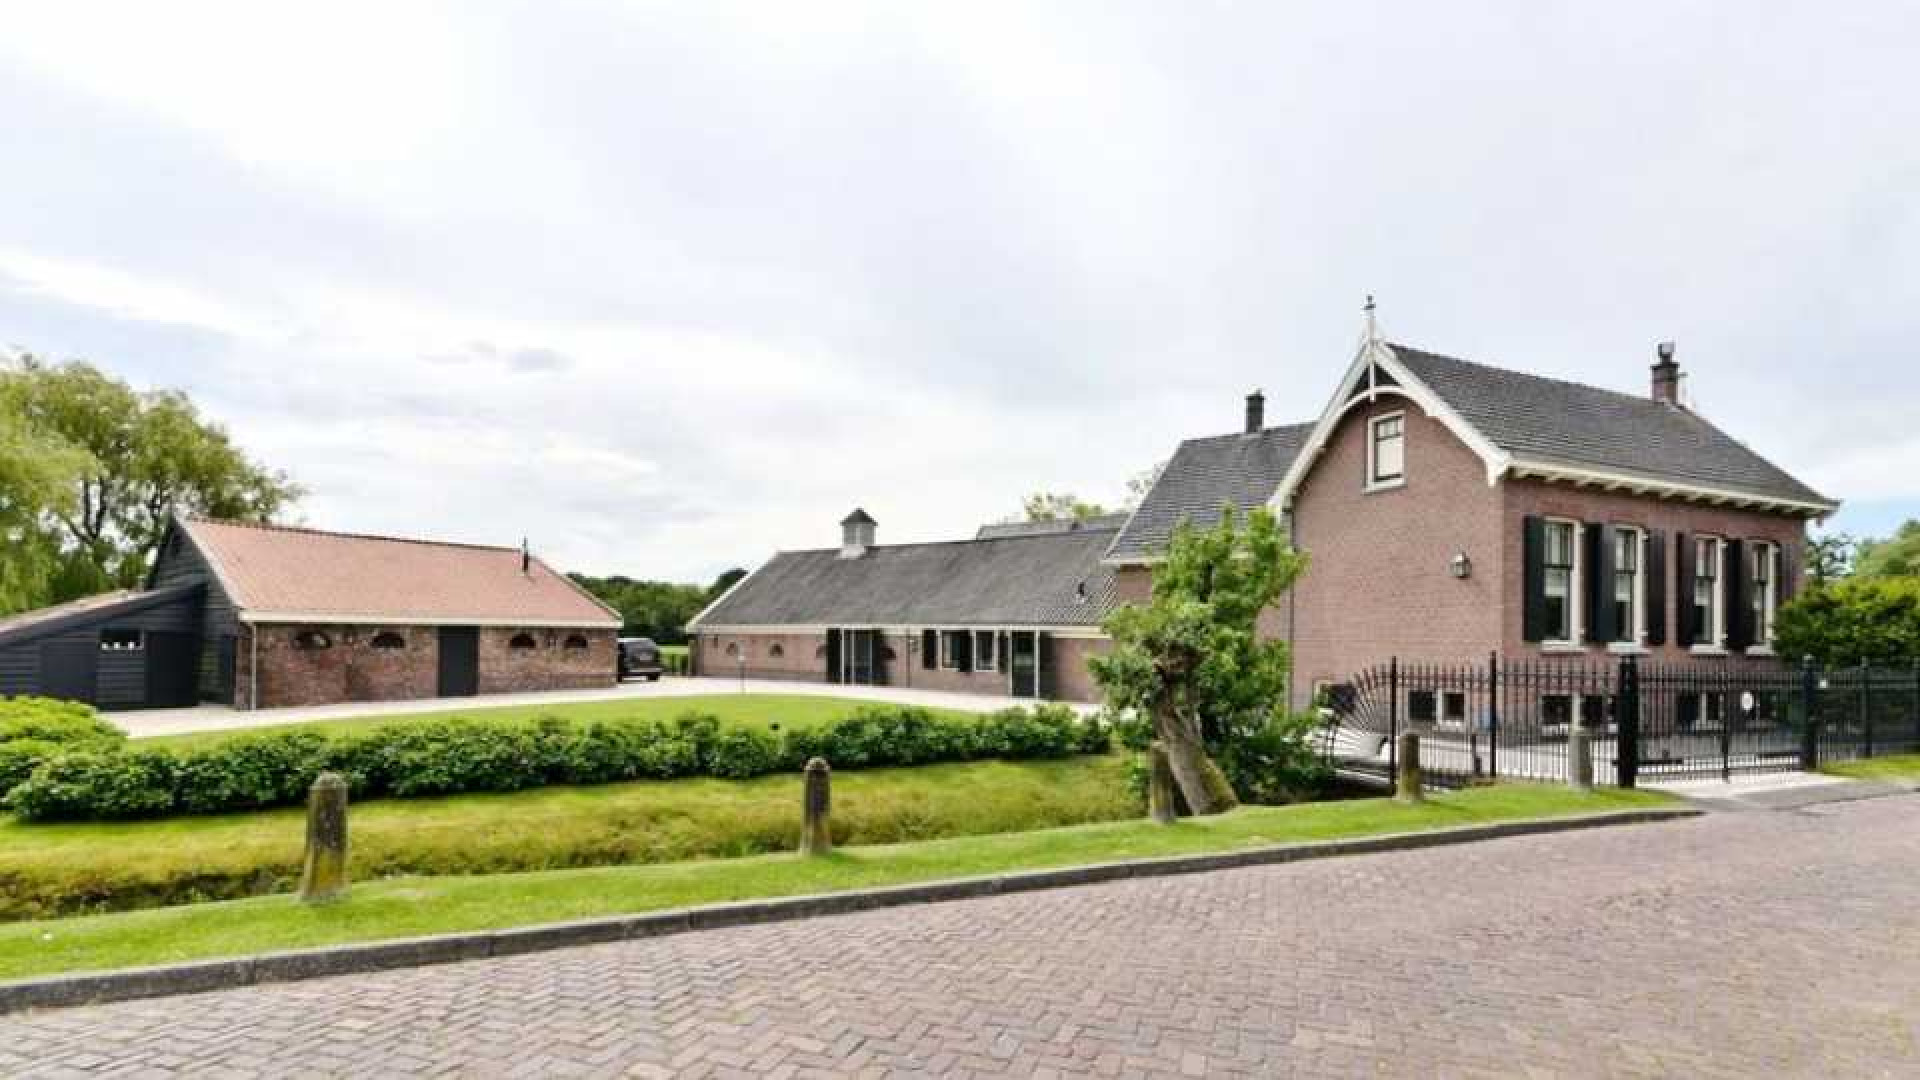 Peter van der Vorst verkoopt zijn huis met bonus. Zie foto's 5